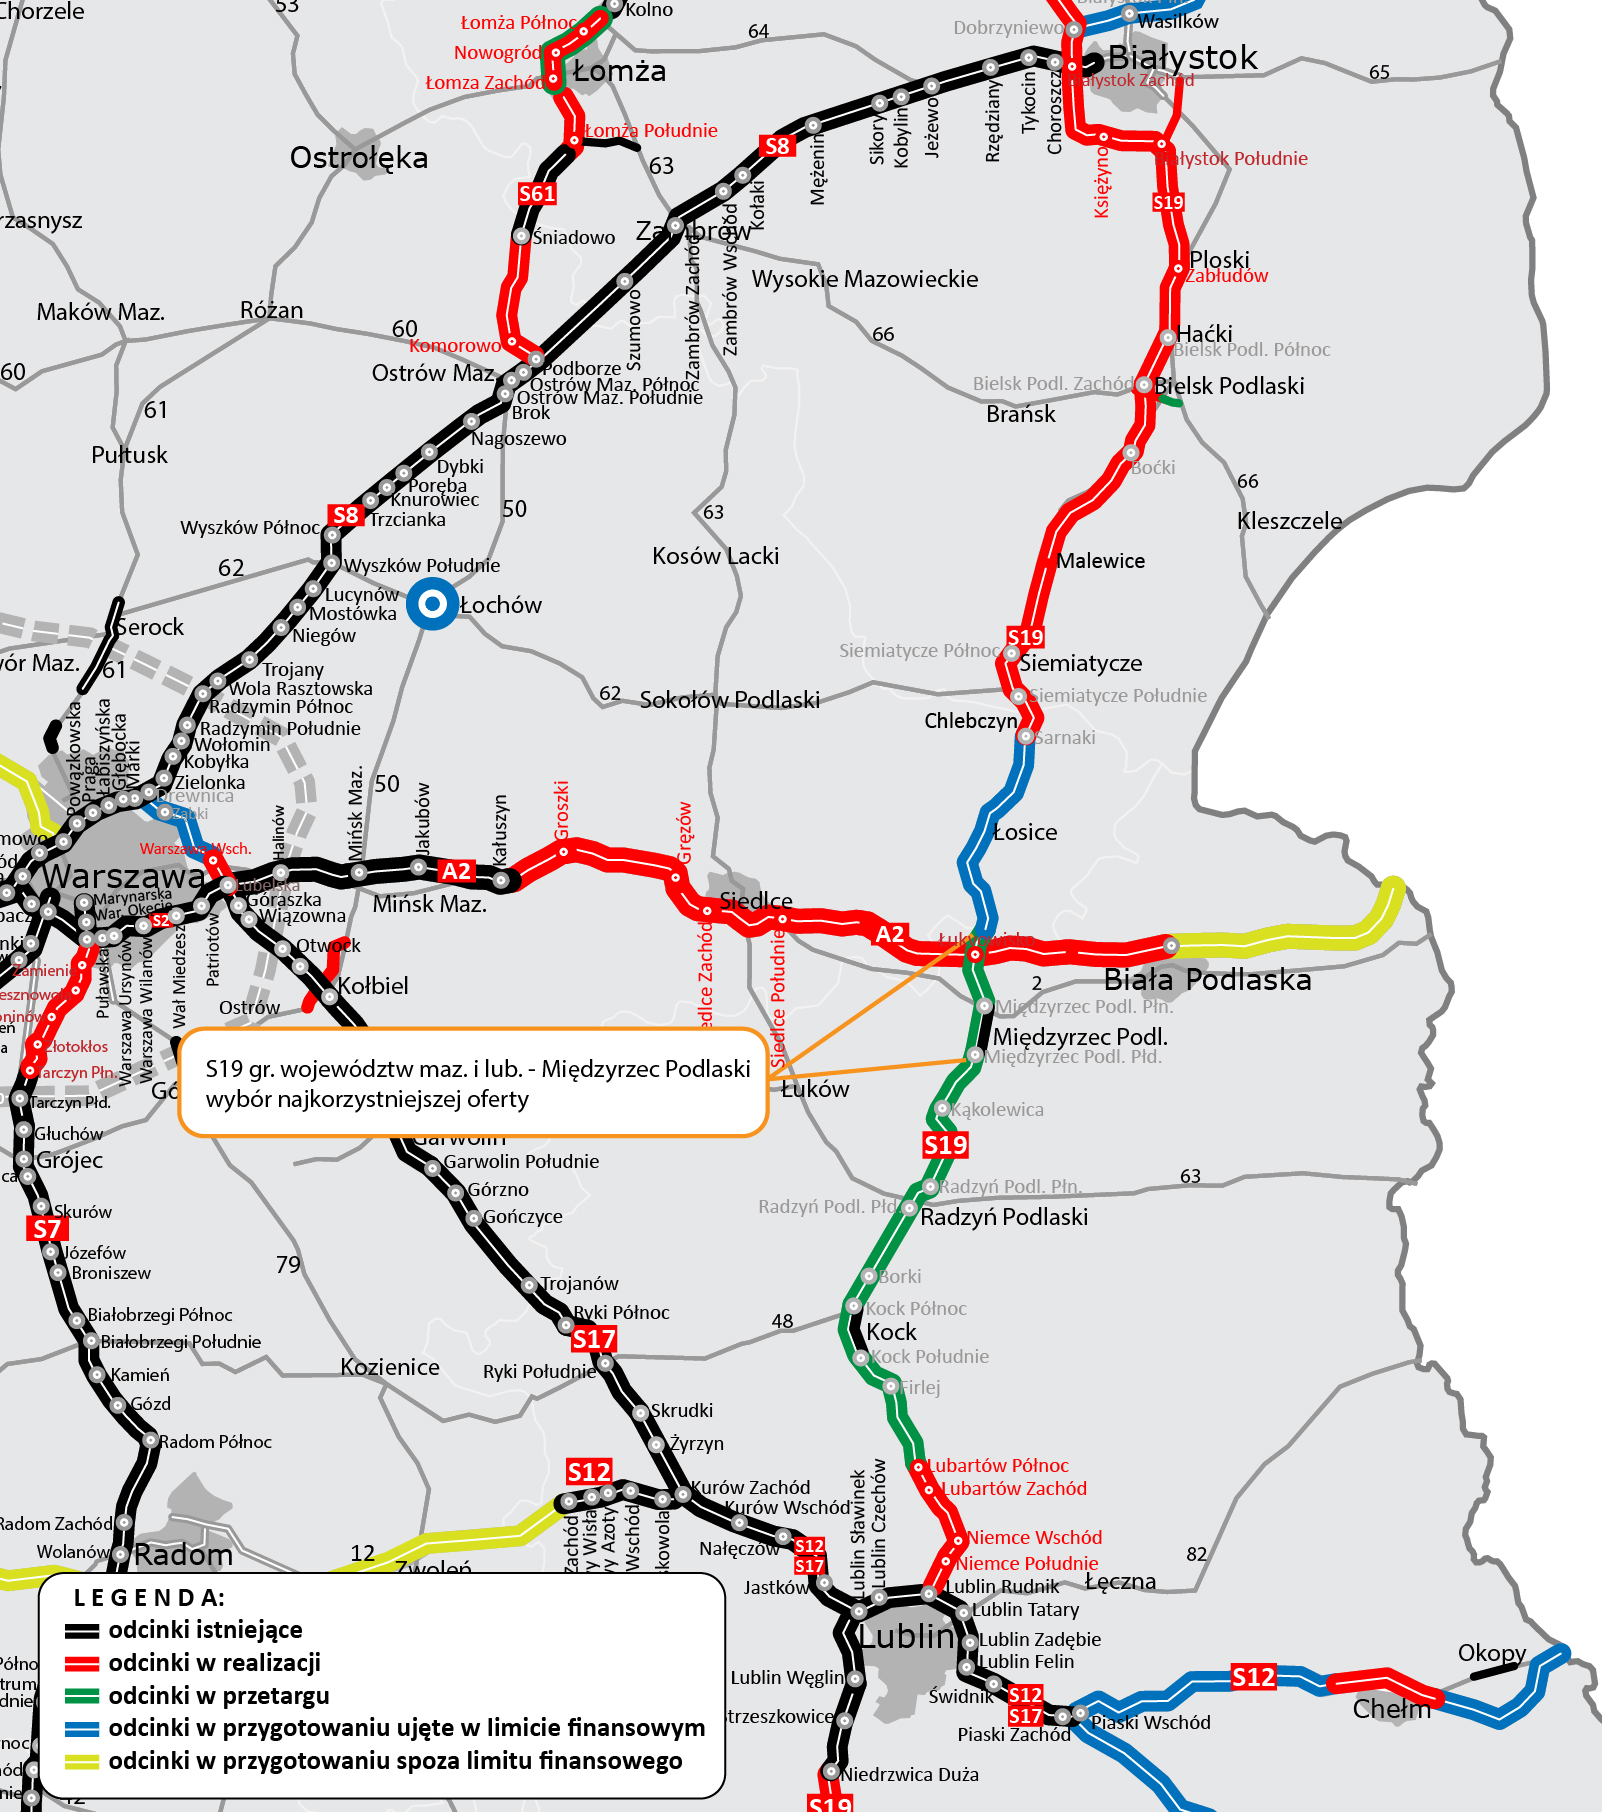 S19 granica województwa - Miedzyrzec Podlaski mapa z zaznaczonym odcinkiem 